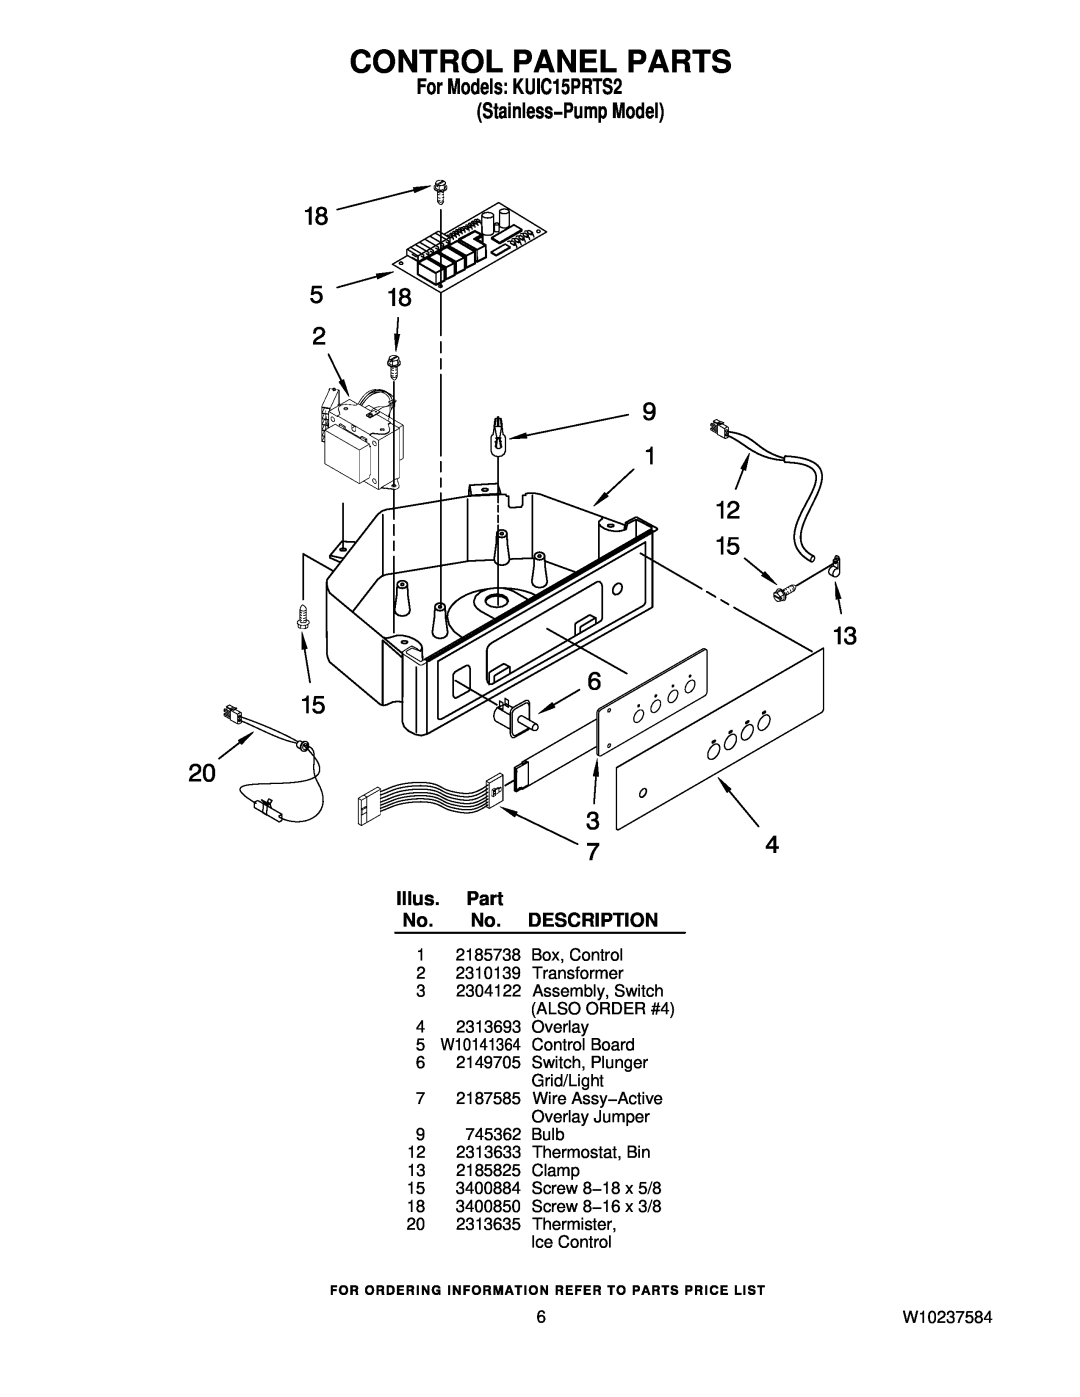 KitchenAid manual Control Panel Parts, For Models KUIC15PRTS2 Stainless−Pump Model, Illus. Part No. No. DESCRIPTION 